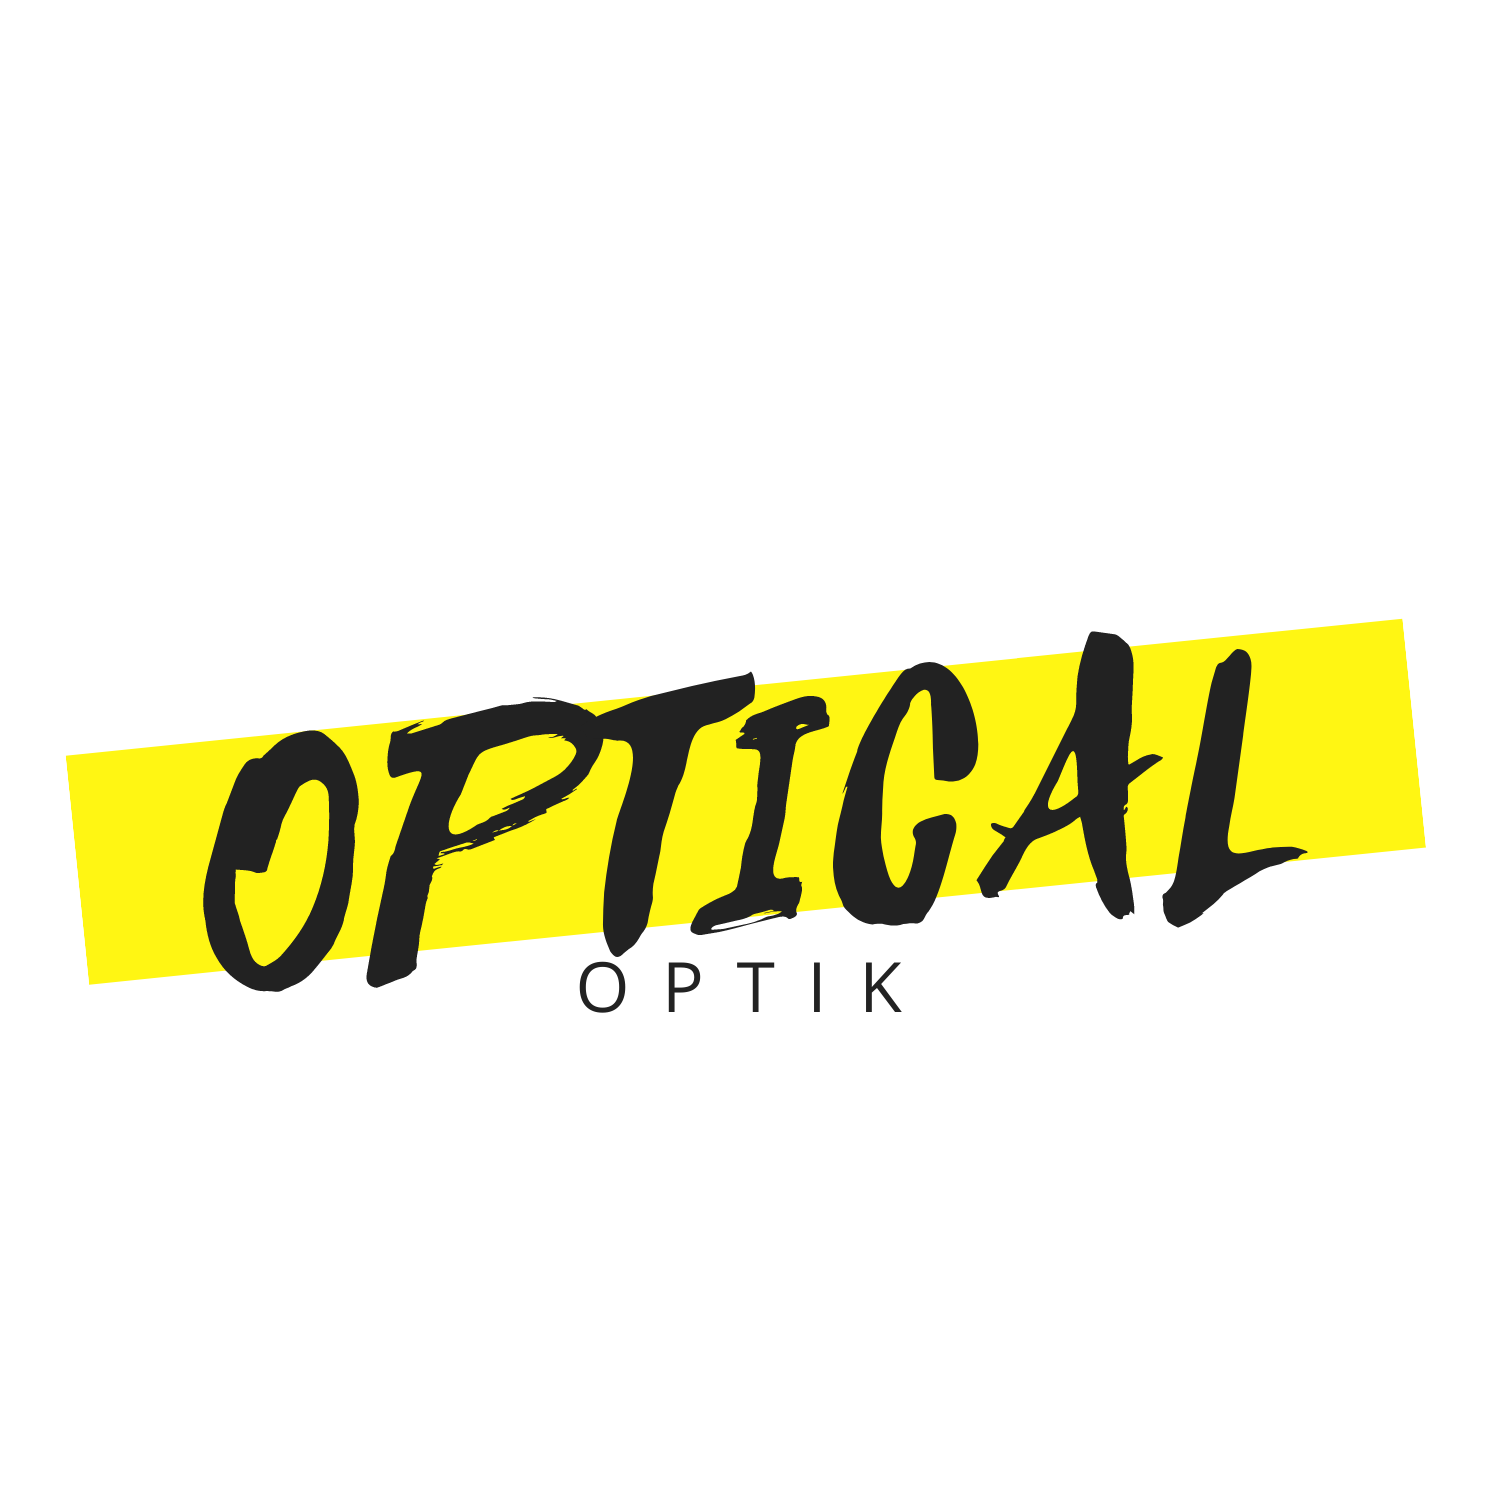 OpticaL OptiK Sezon Sonu İndirimleri